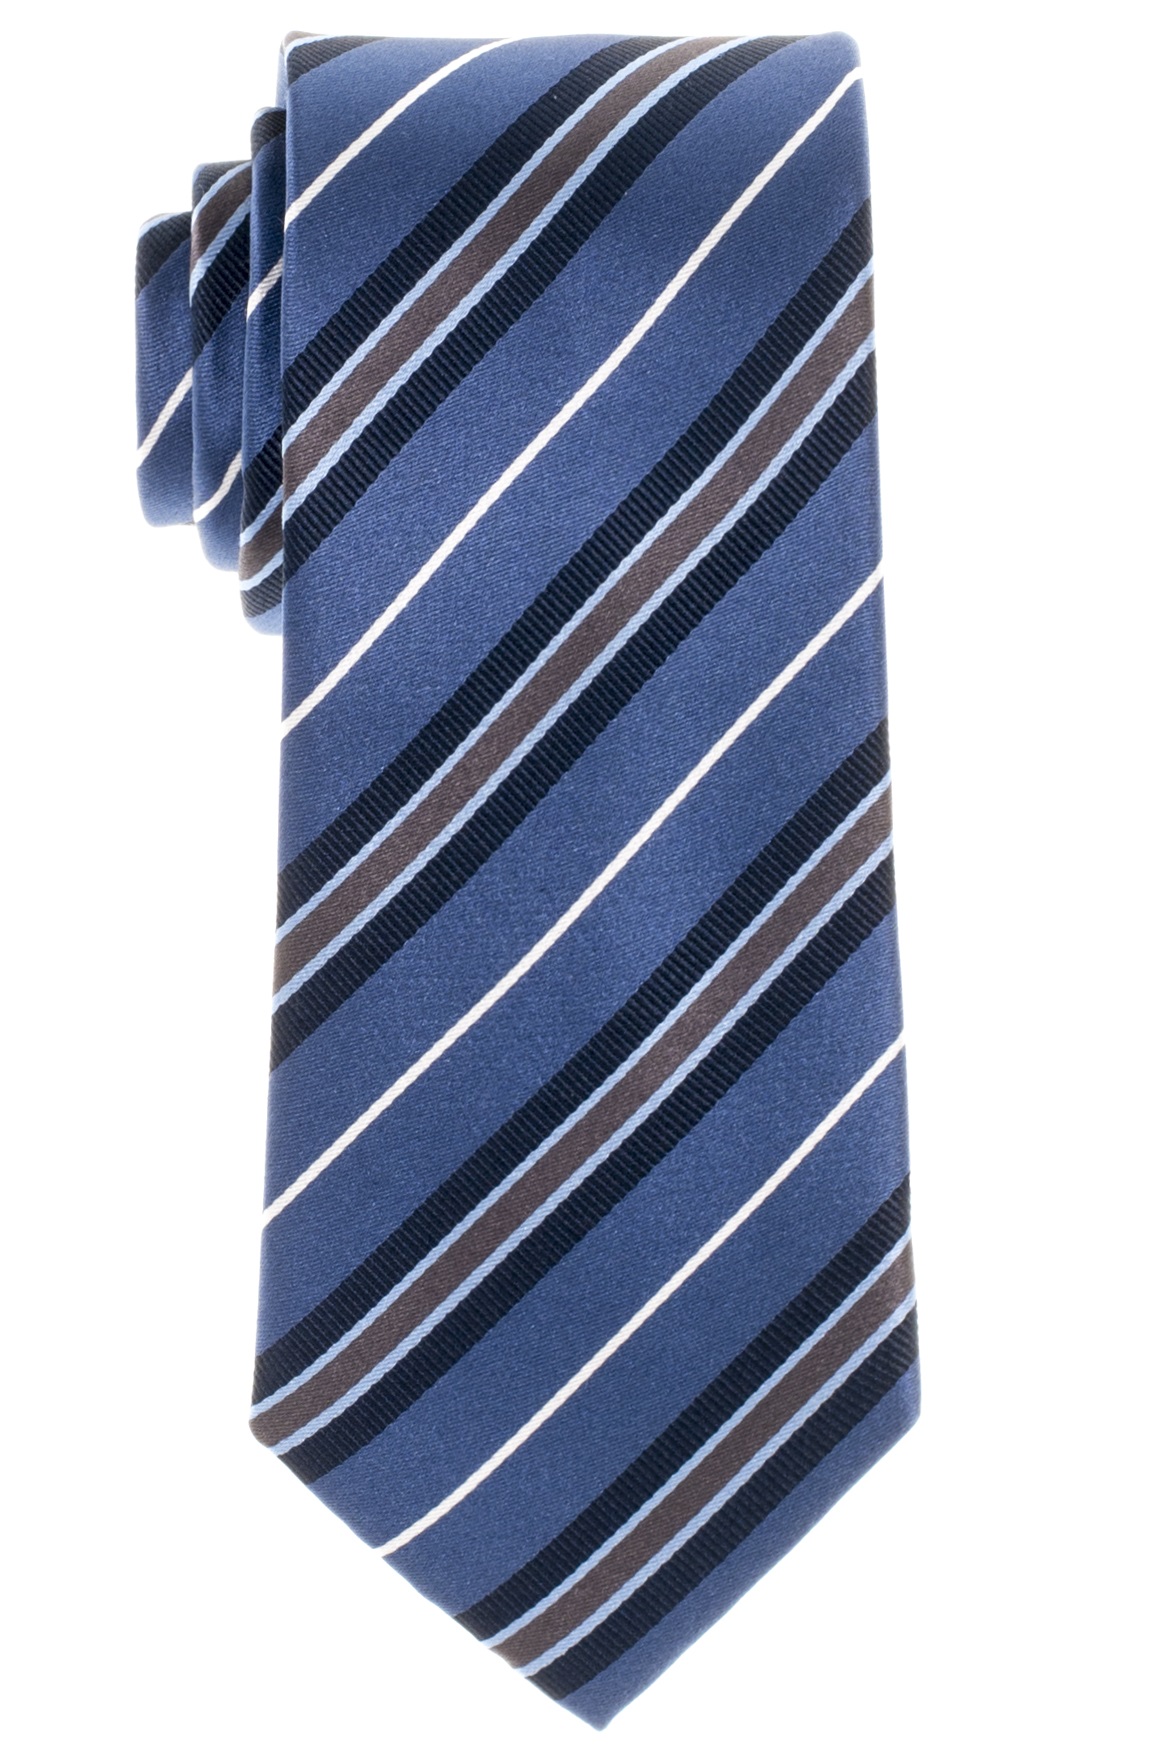 Gestreifte Eterna Krawatte in blau marine weiß und grau-braun | ETERNA und  Olymp Hemden 68 + 72 cm Extra Lang